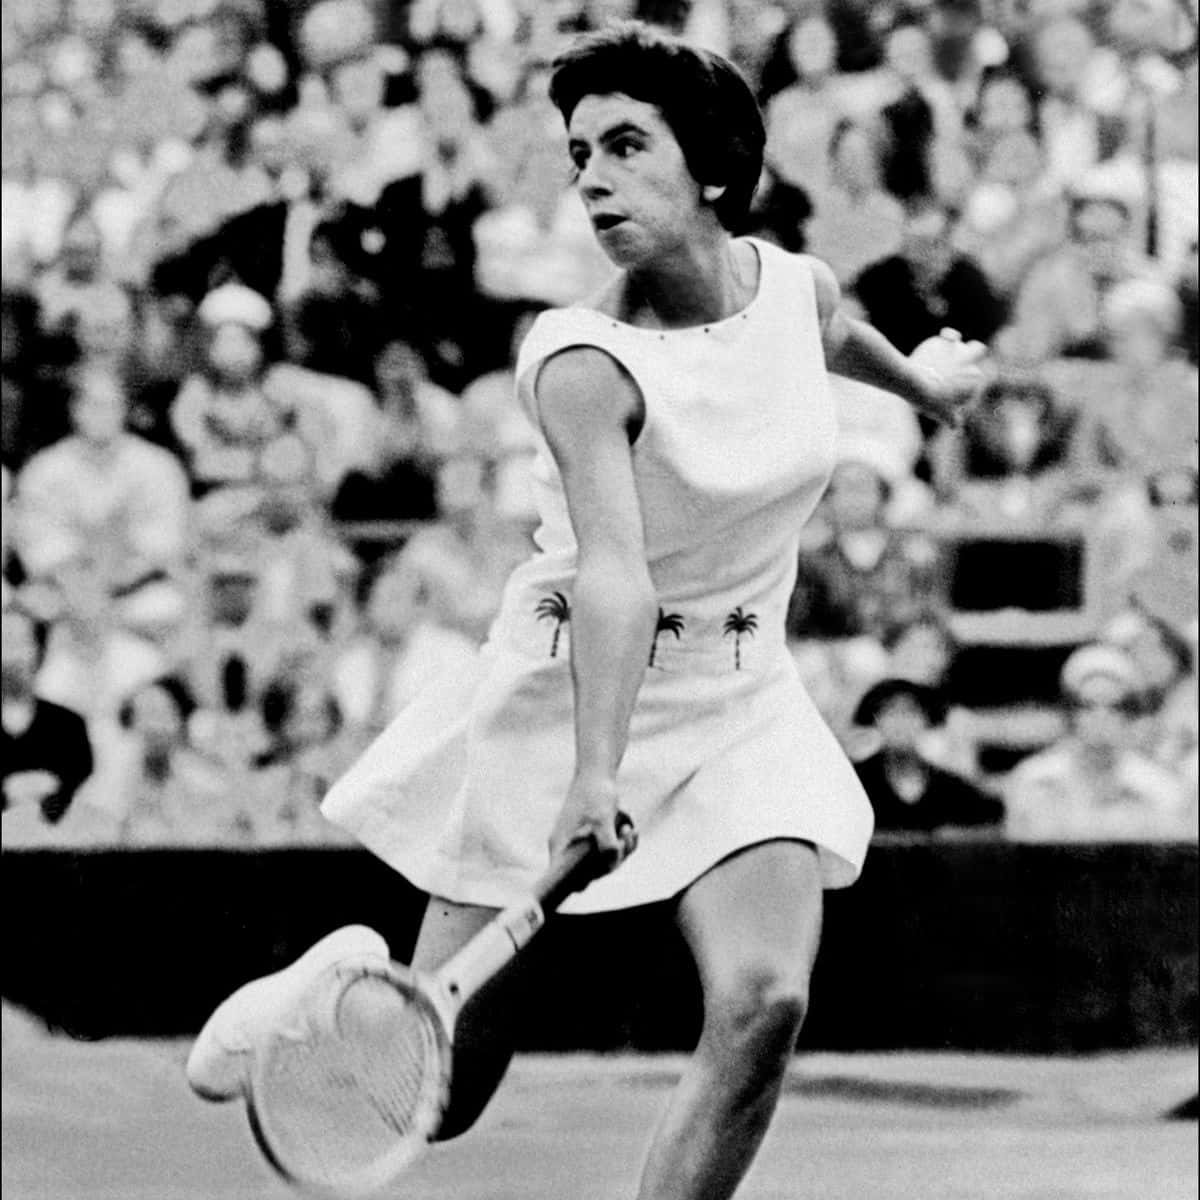 Maria Bueno In Dress-like Sports Attire Wallpaper